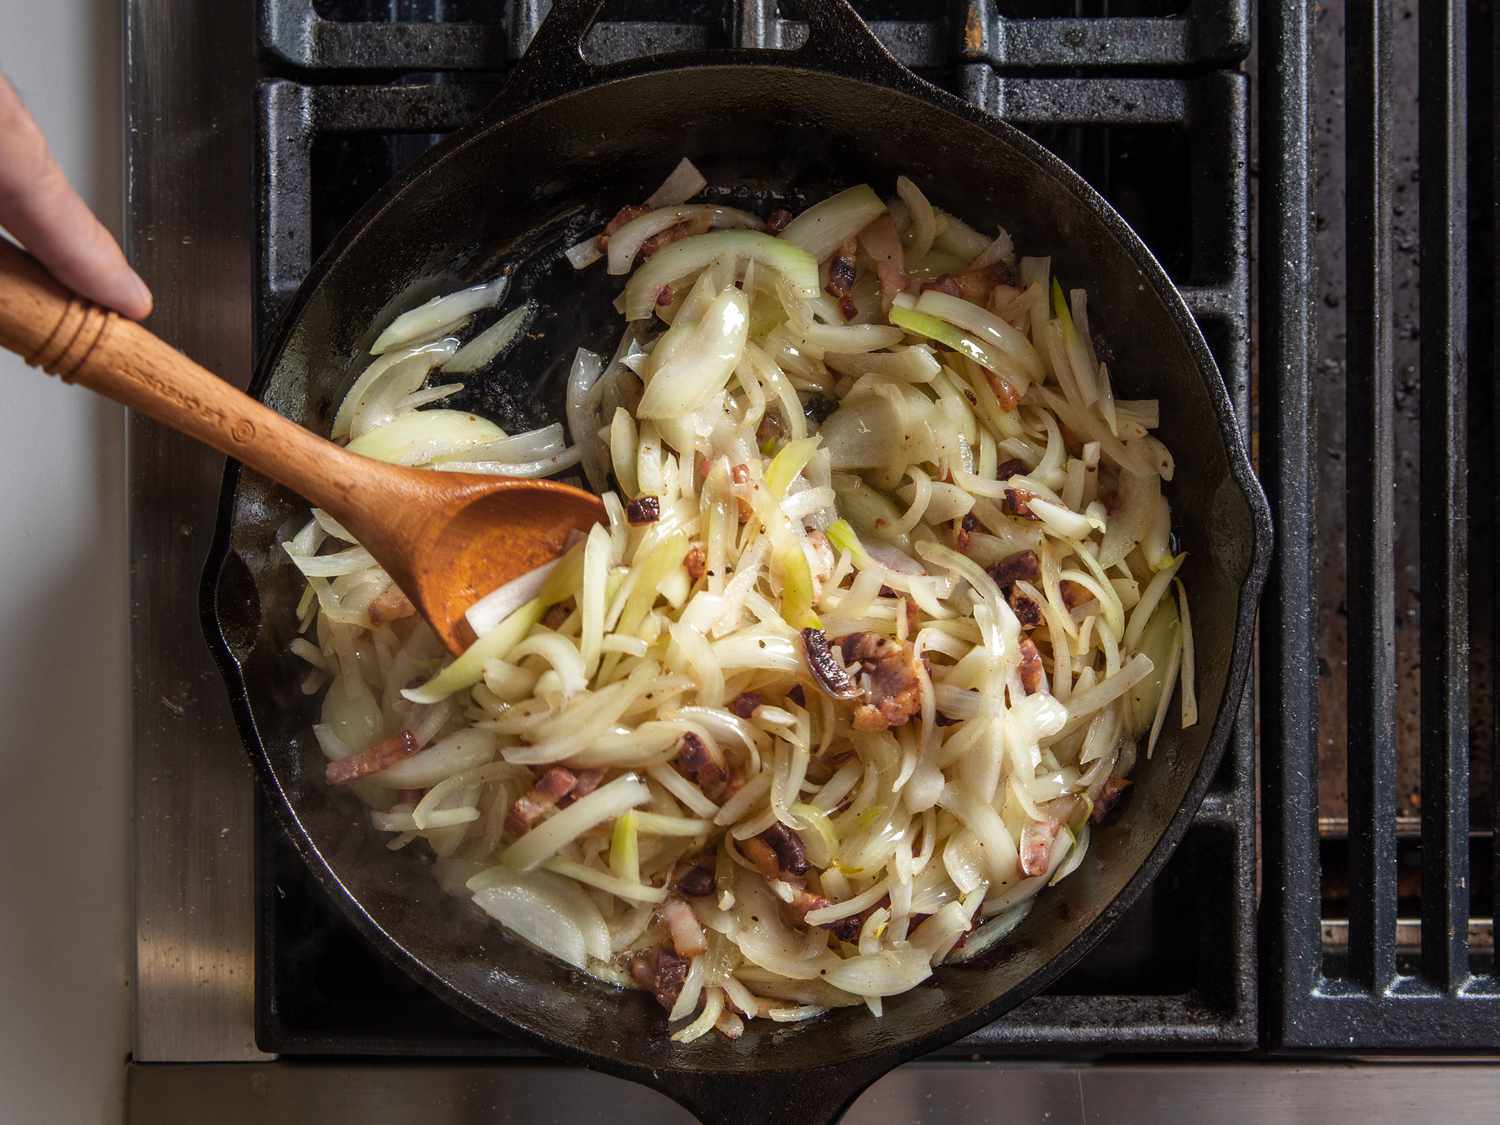 切好的洋葱和培根一起放在铸铁煎锅里煮。